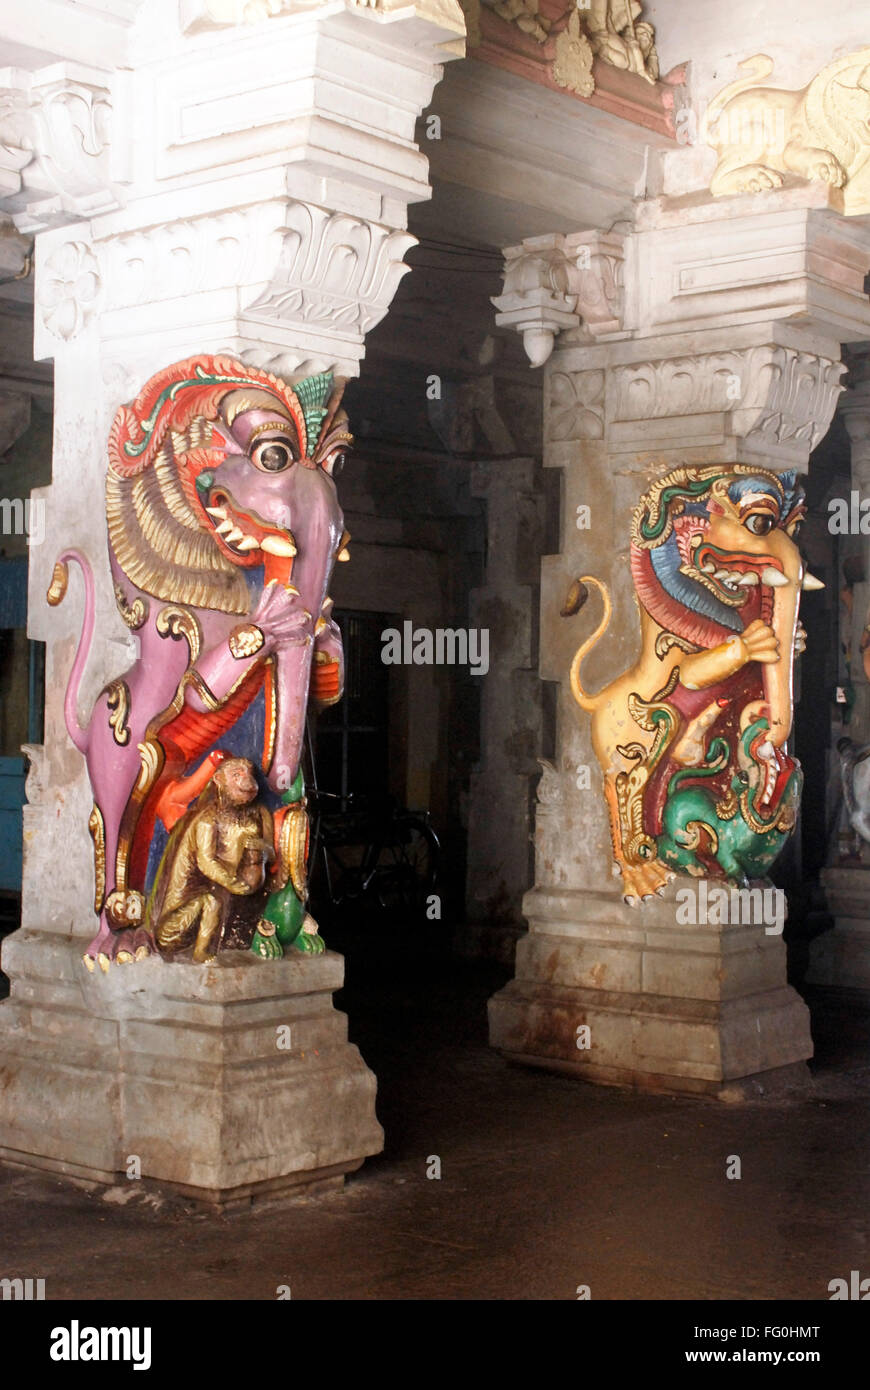 Richement sculptés et peints de couleurs vives de la lutte contre les animaux mythologiques sur pilier du temple Ramanathswami , Tamil Nadu , Inde Banque D'Images